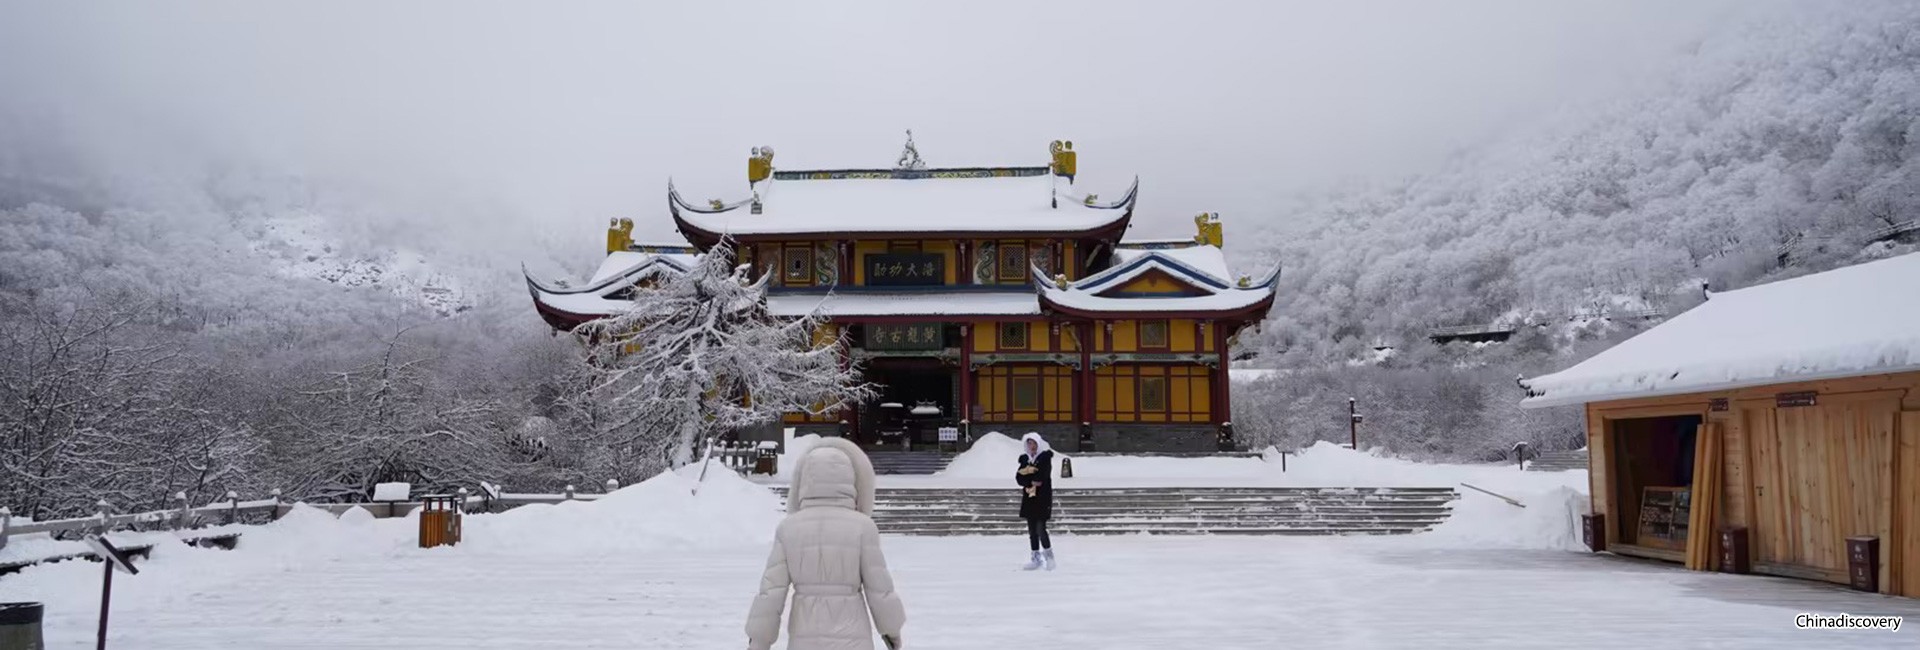 3 Days Jiuzhaigou Winter Tour